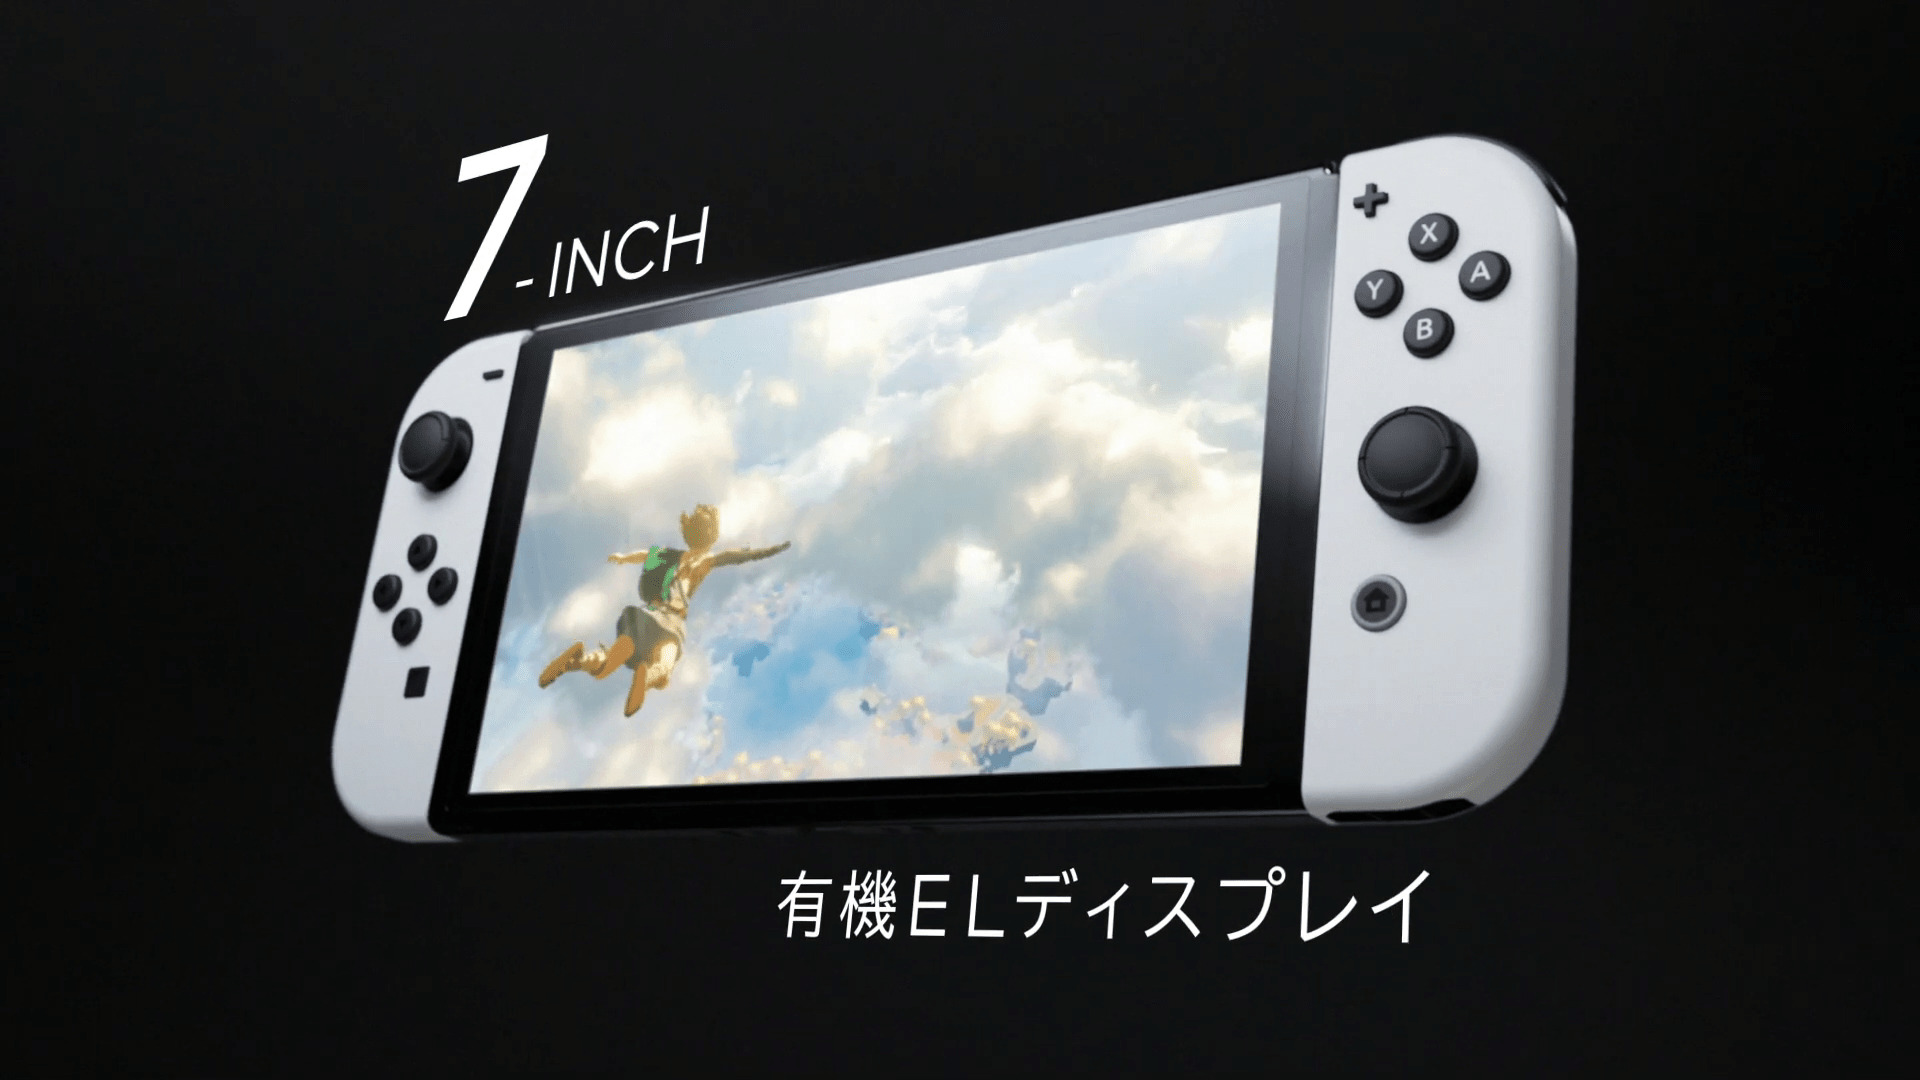 有機ELディスプレイを備えた新型「Nintendo Switch(有機ELモデル)」発表、2021年10月8日発売決定 | ストリーミングビギナーズ